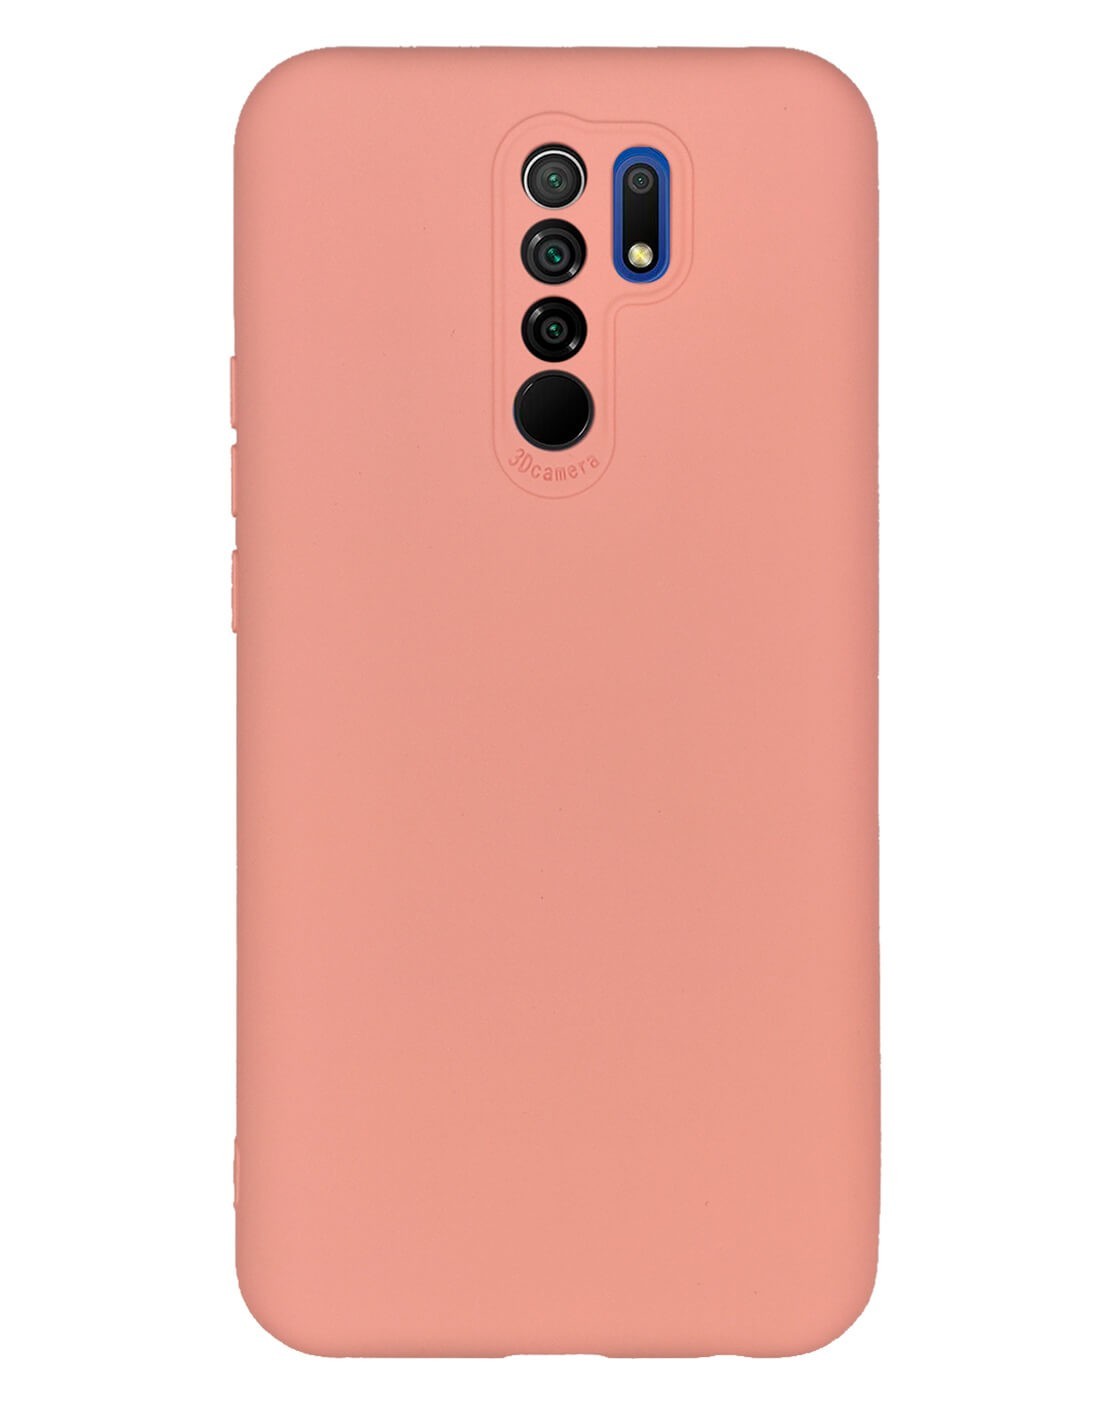 Funda suave y de color para el Xiaomi Redmi 9